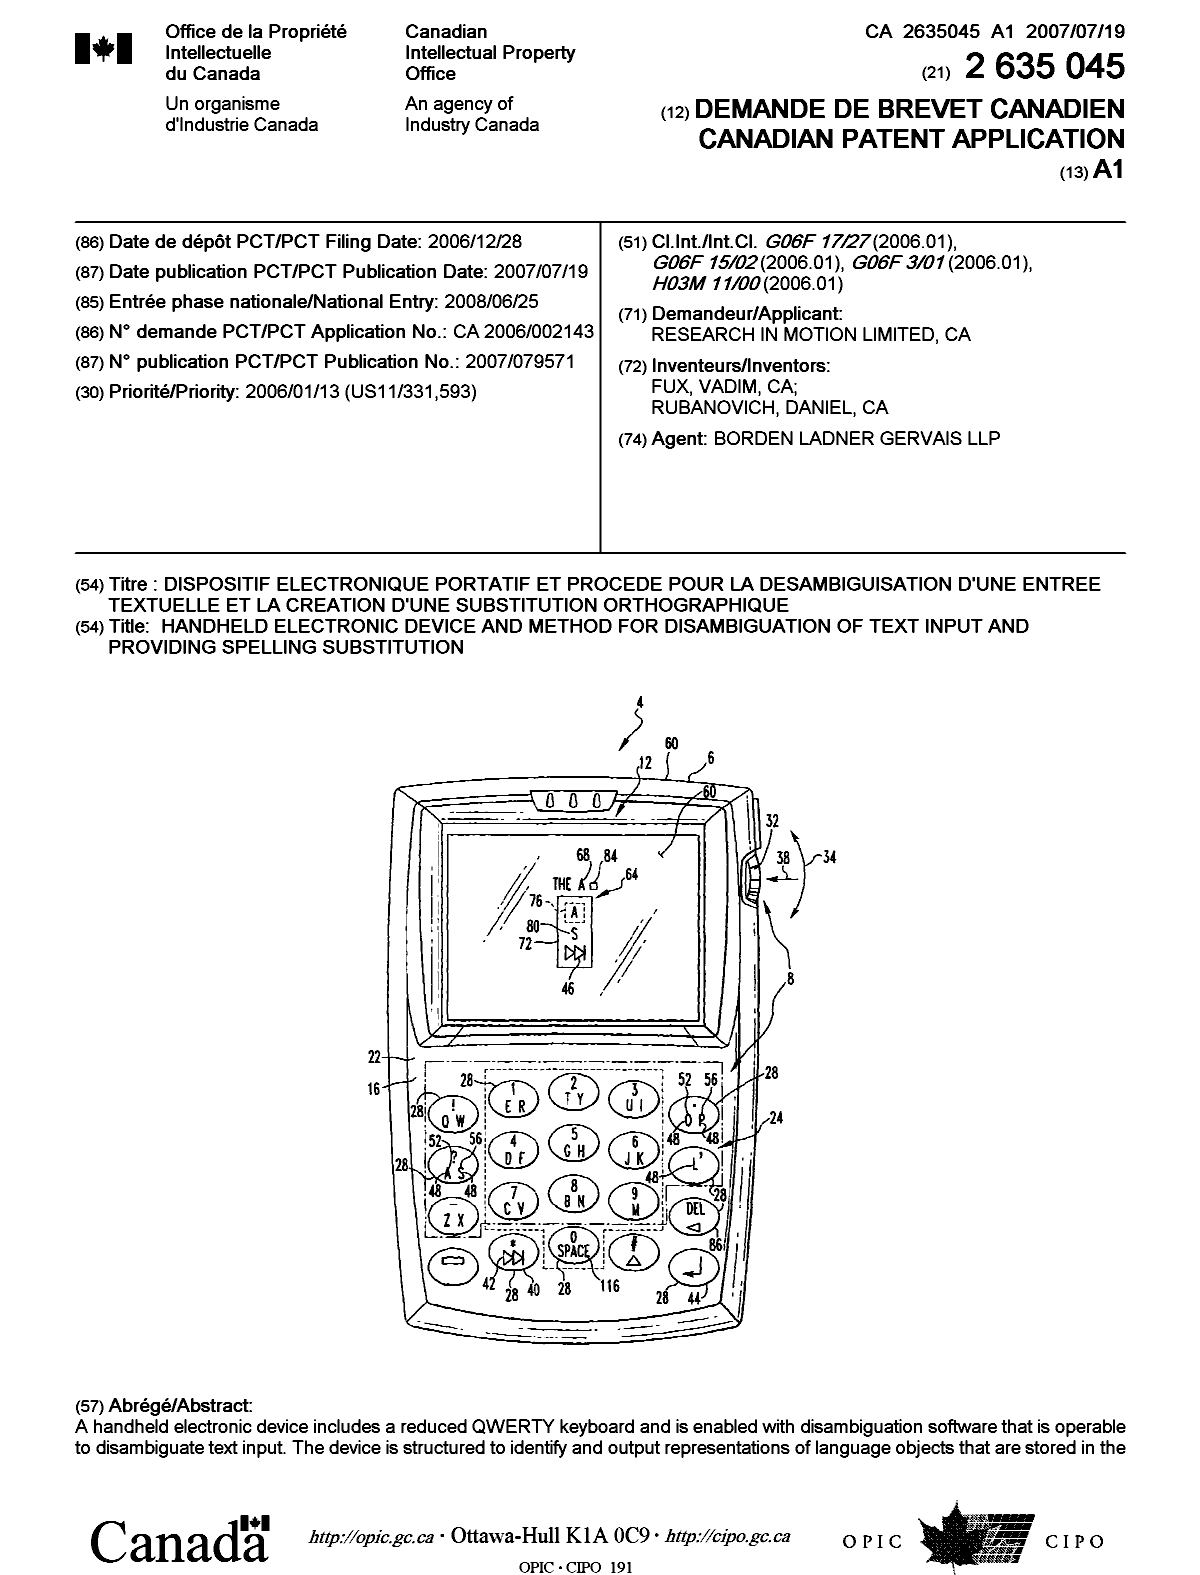 Document de brevet canadien 2635045. Page couverture 20081020. Image 1 de 2